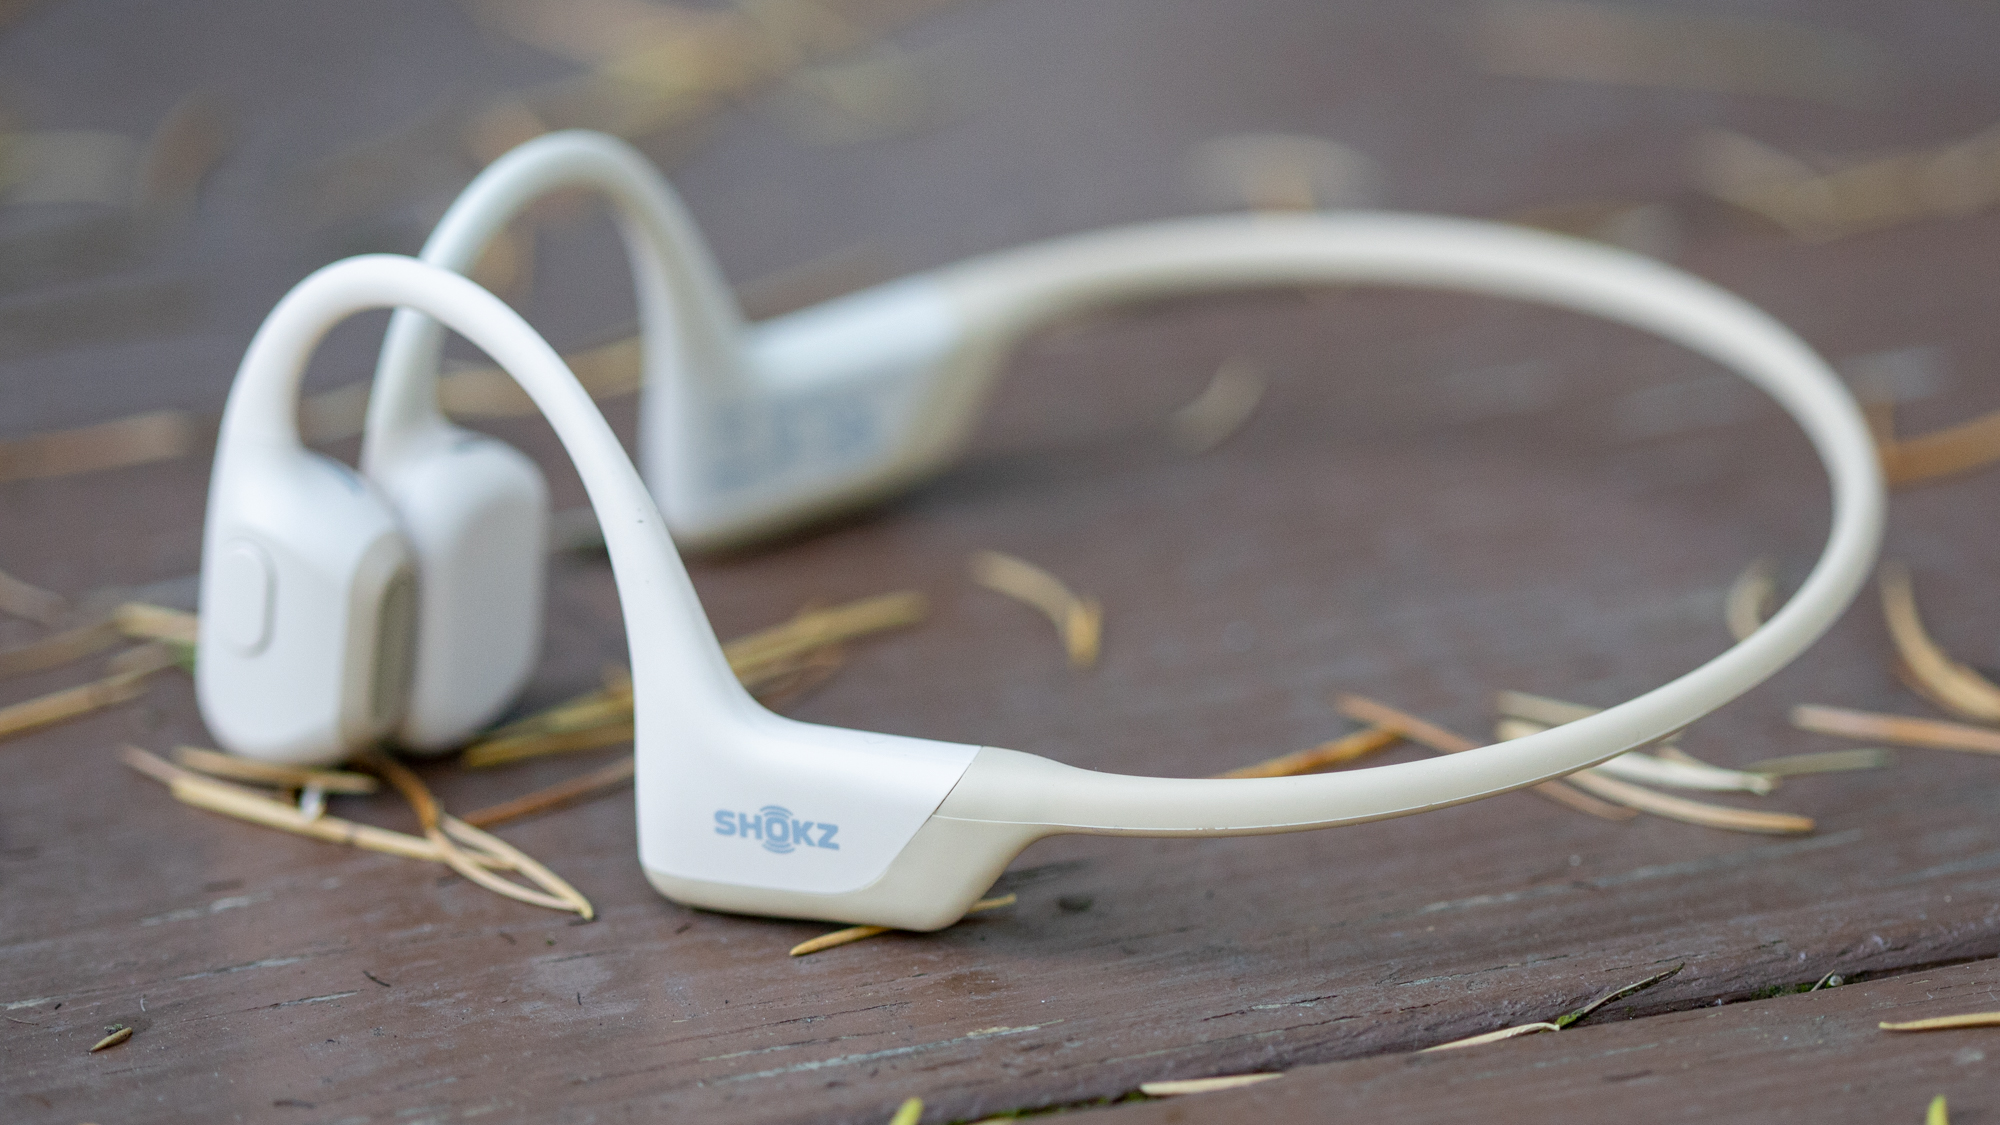 Wireless 5.1 Bluetooth Football Shape Earphones Headset Earbuds